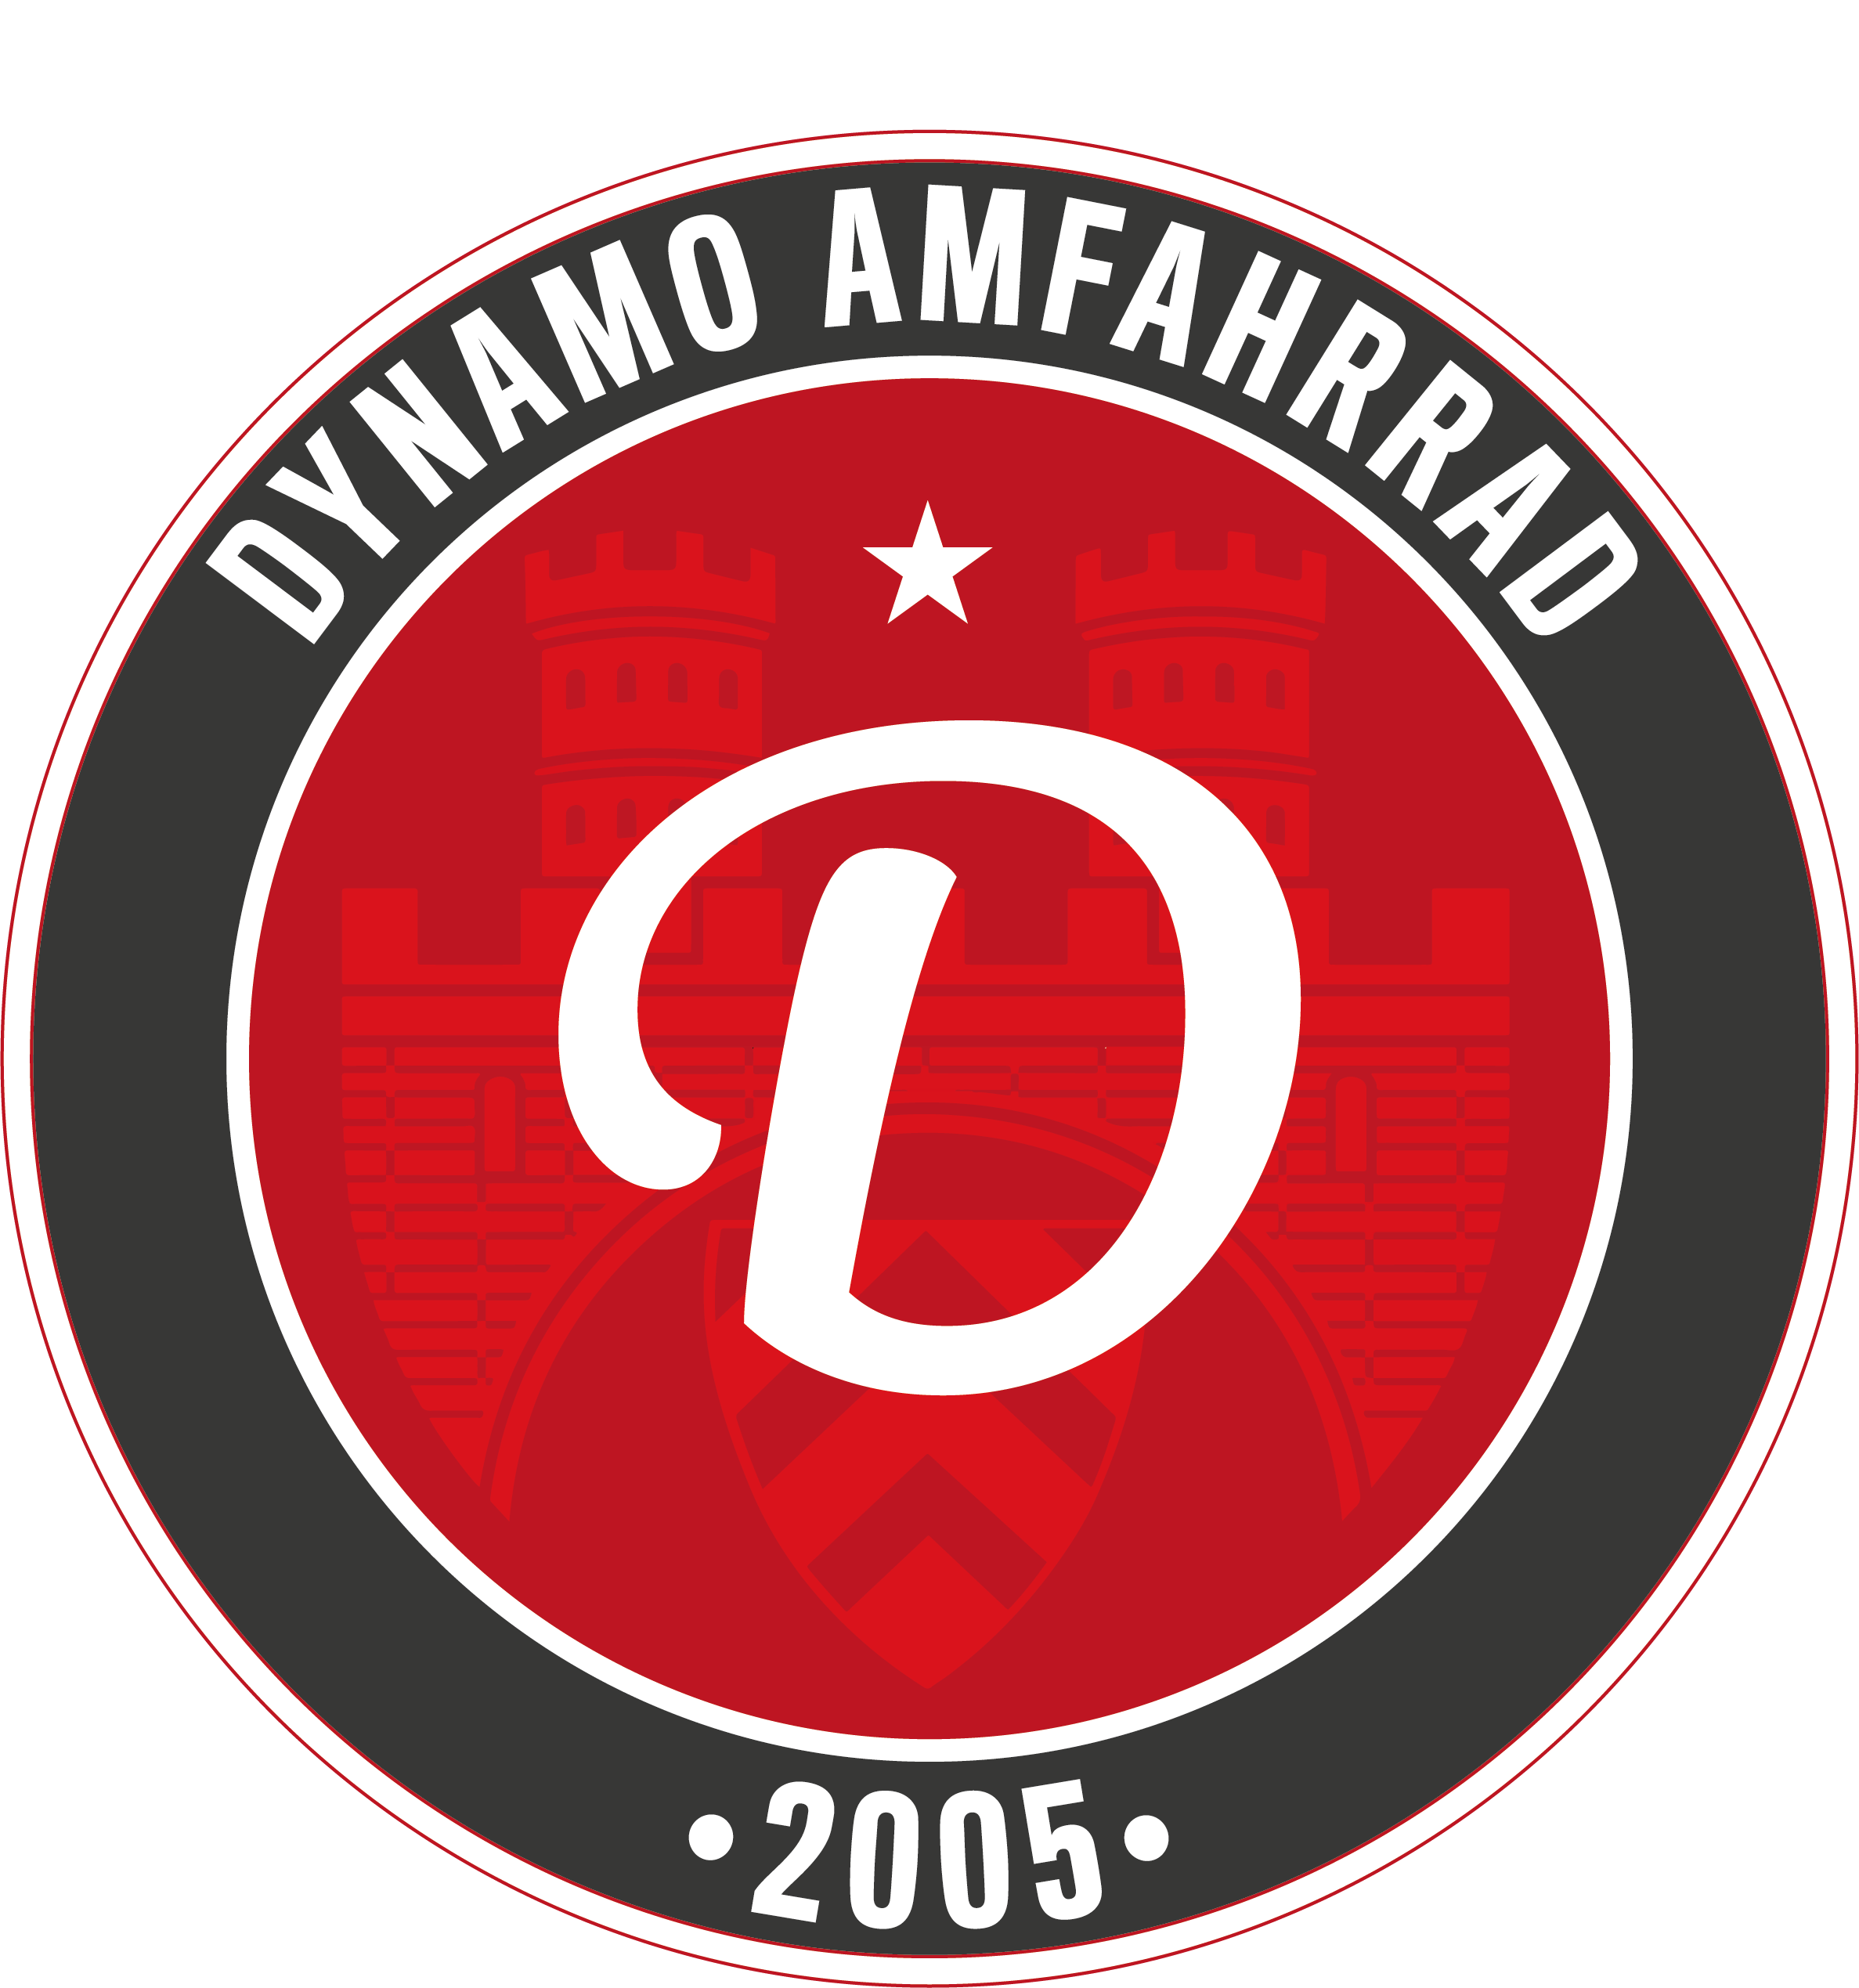 Dynamo Amfahrrad